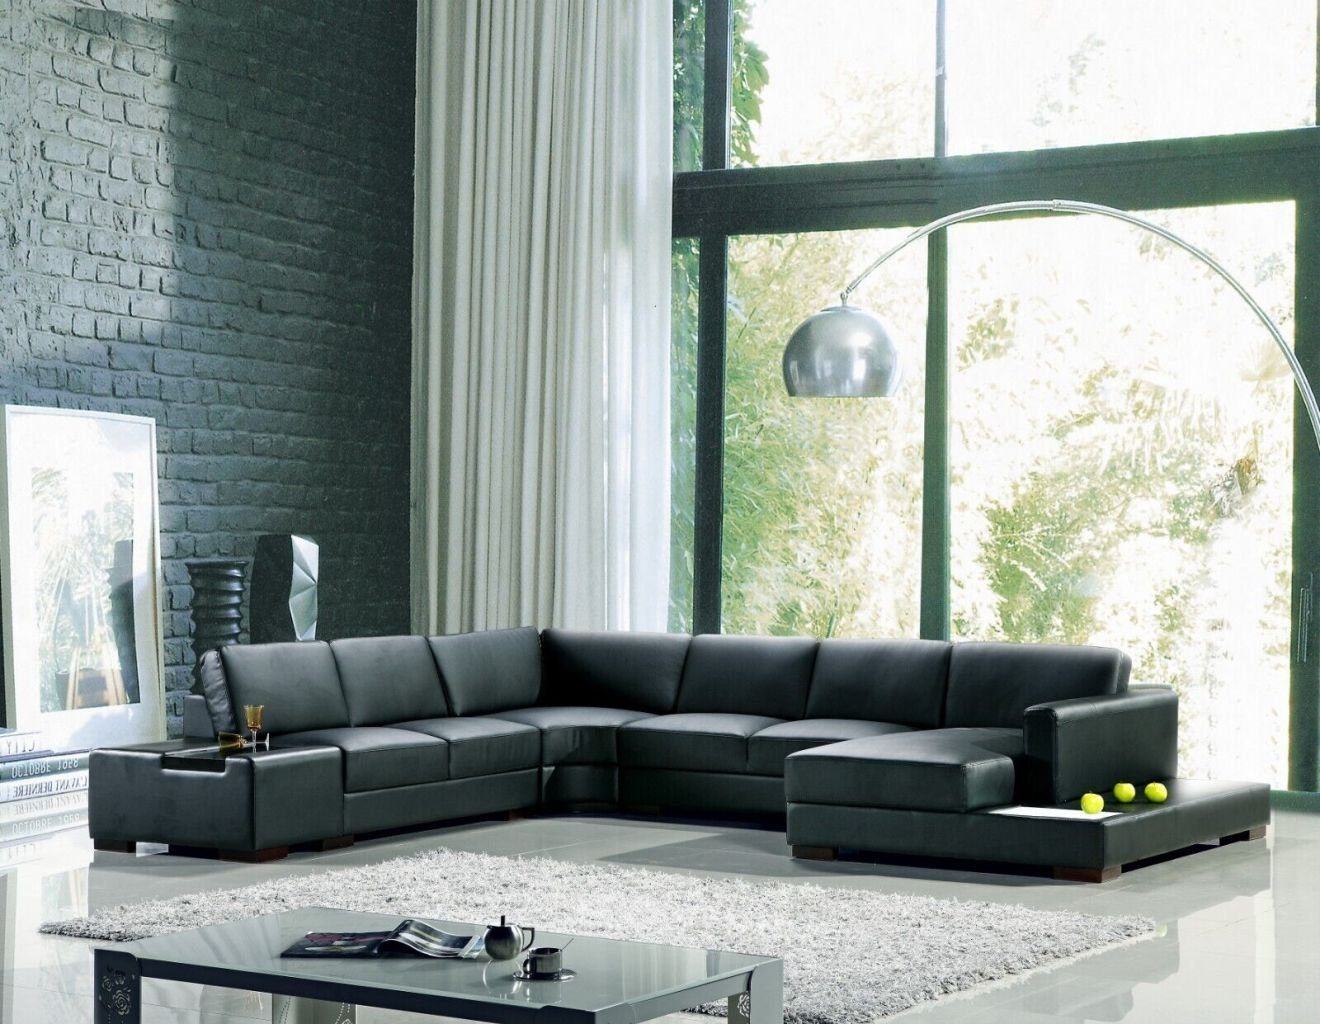 JVmoebel Ecksofa Ecksofa Schwarz U-Form Luxus Stil Modern Wohnzimmer Sofa SOFORT, 1 Teile, Made in Europa